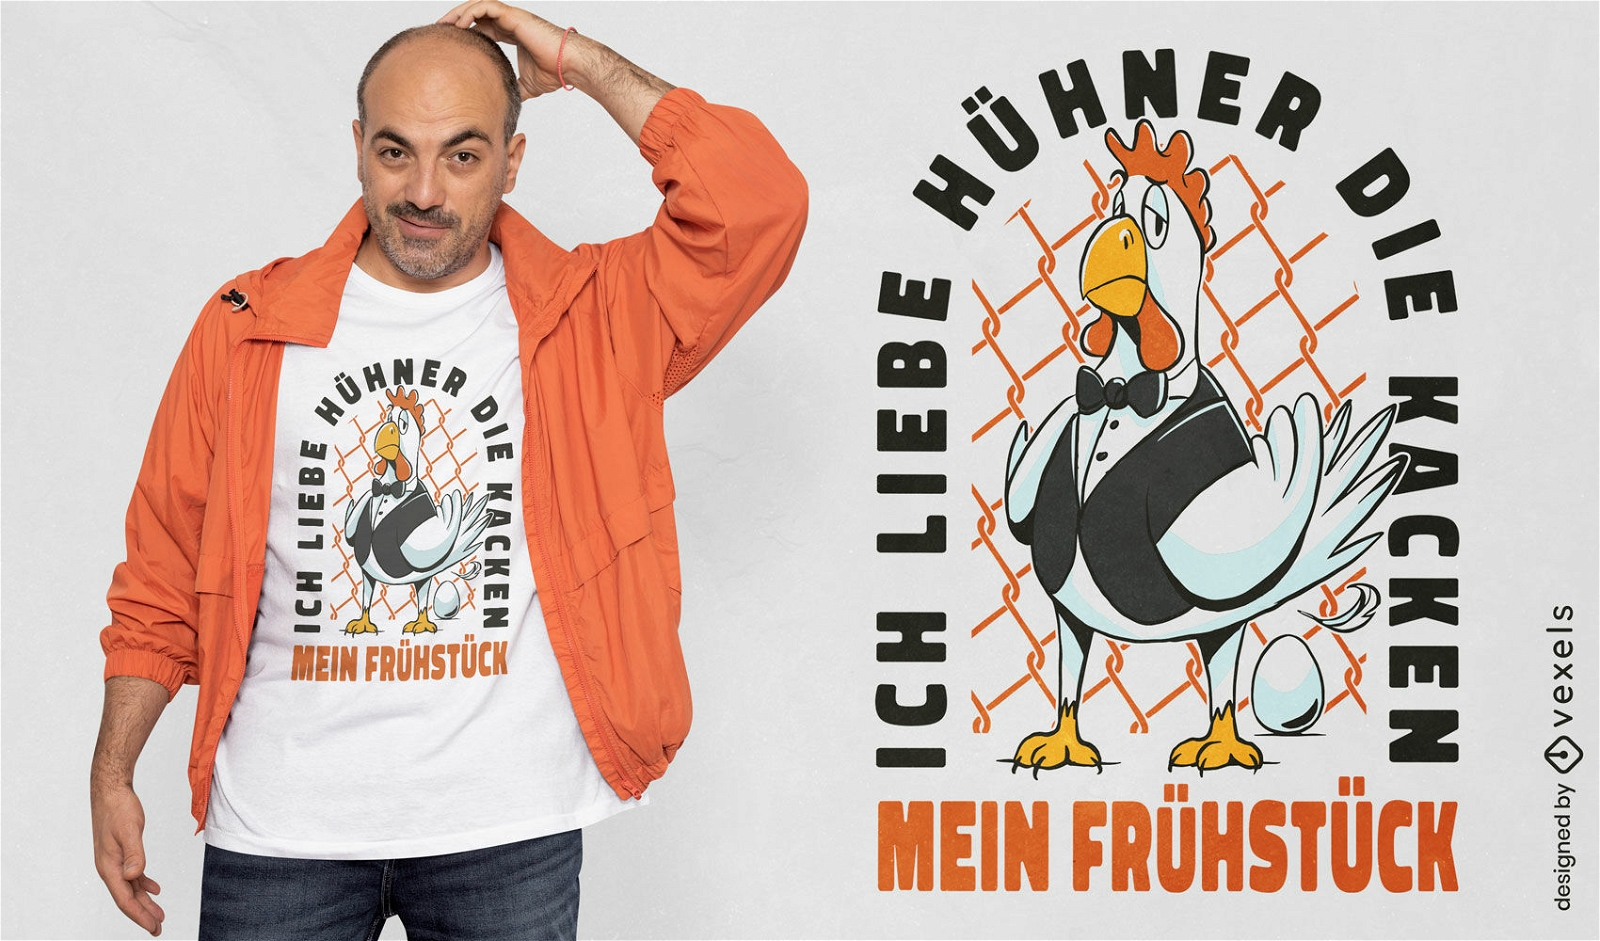 Funny chicken cartoon t-shirt design